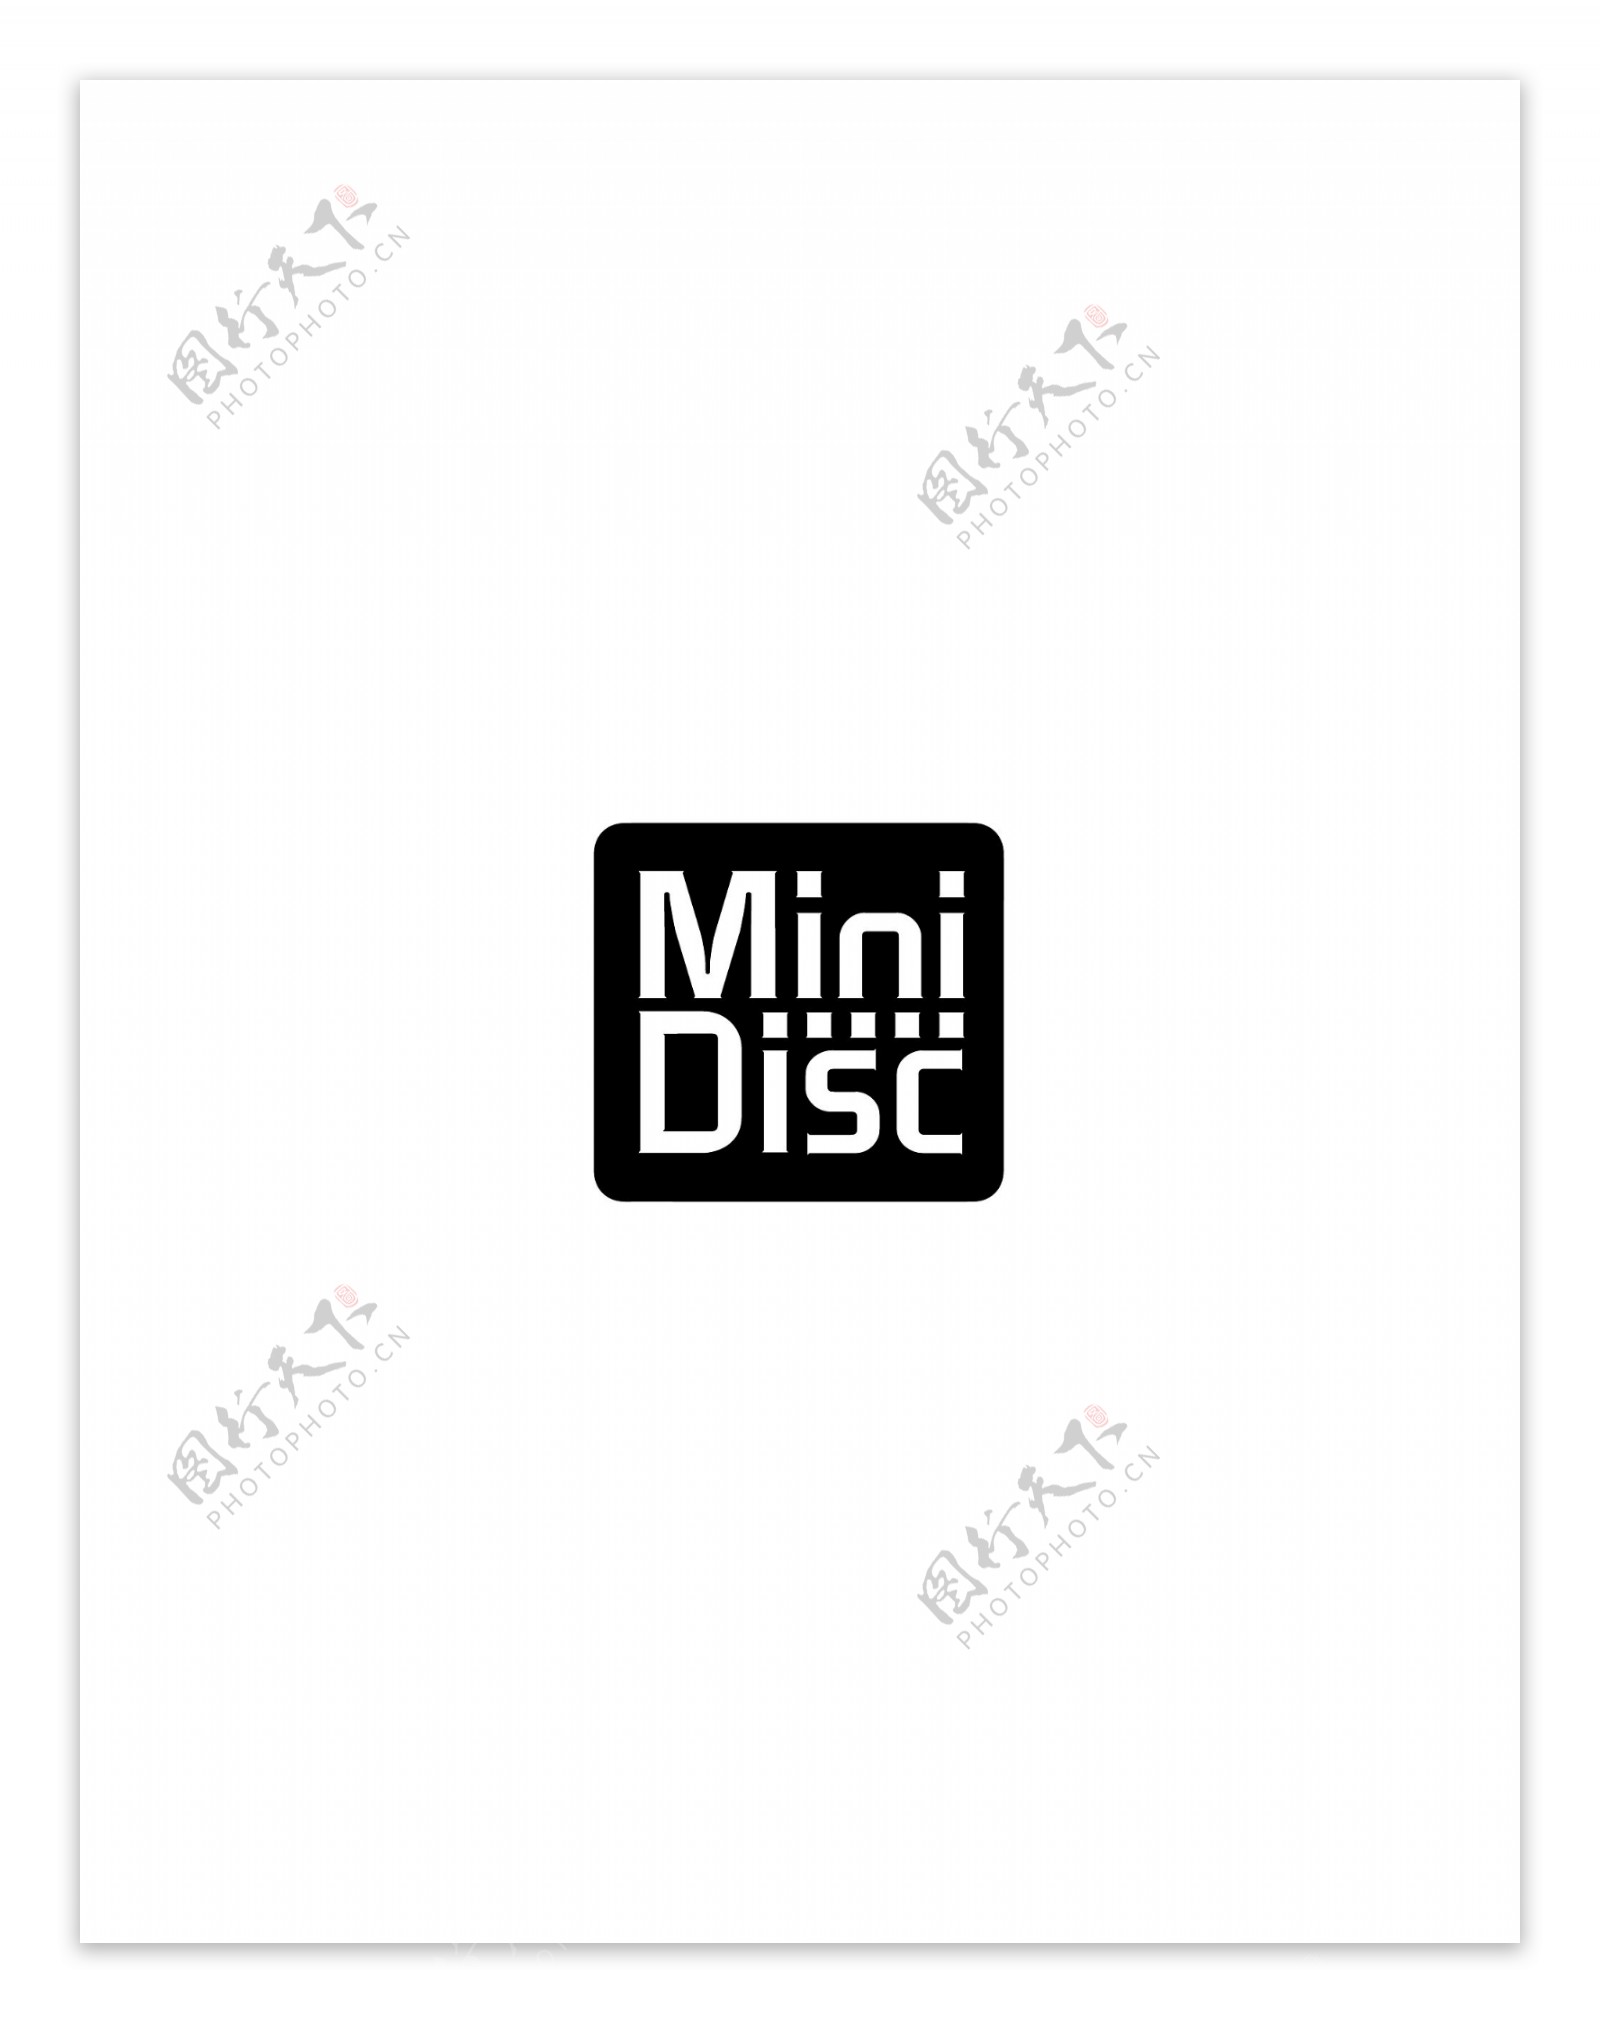 MiniDisclogo设计欣赏传统企业标志设计MiniDisc下载标志设计欣赏